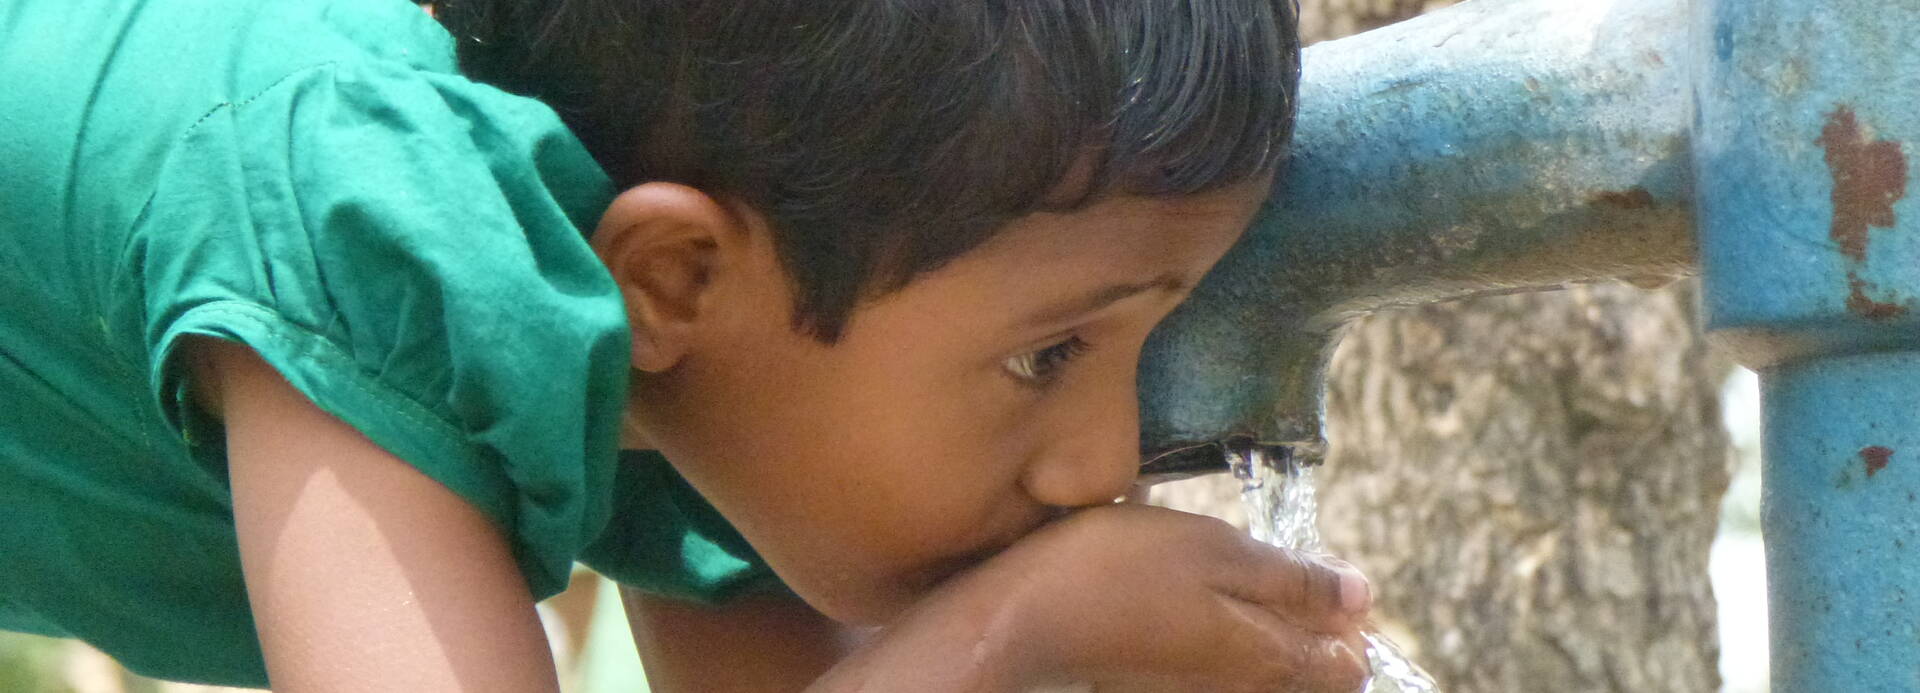 Kind trinkt Wasser aus einem Brunnen.